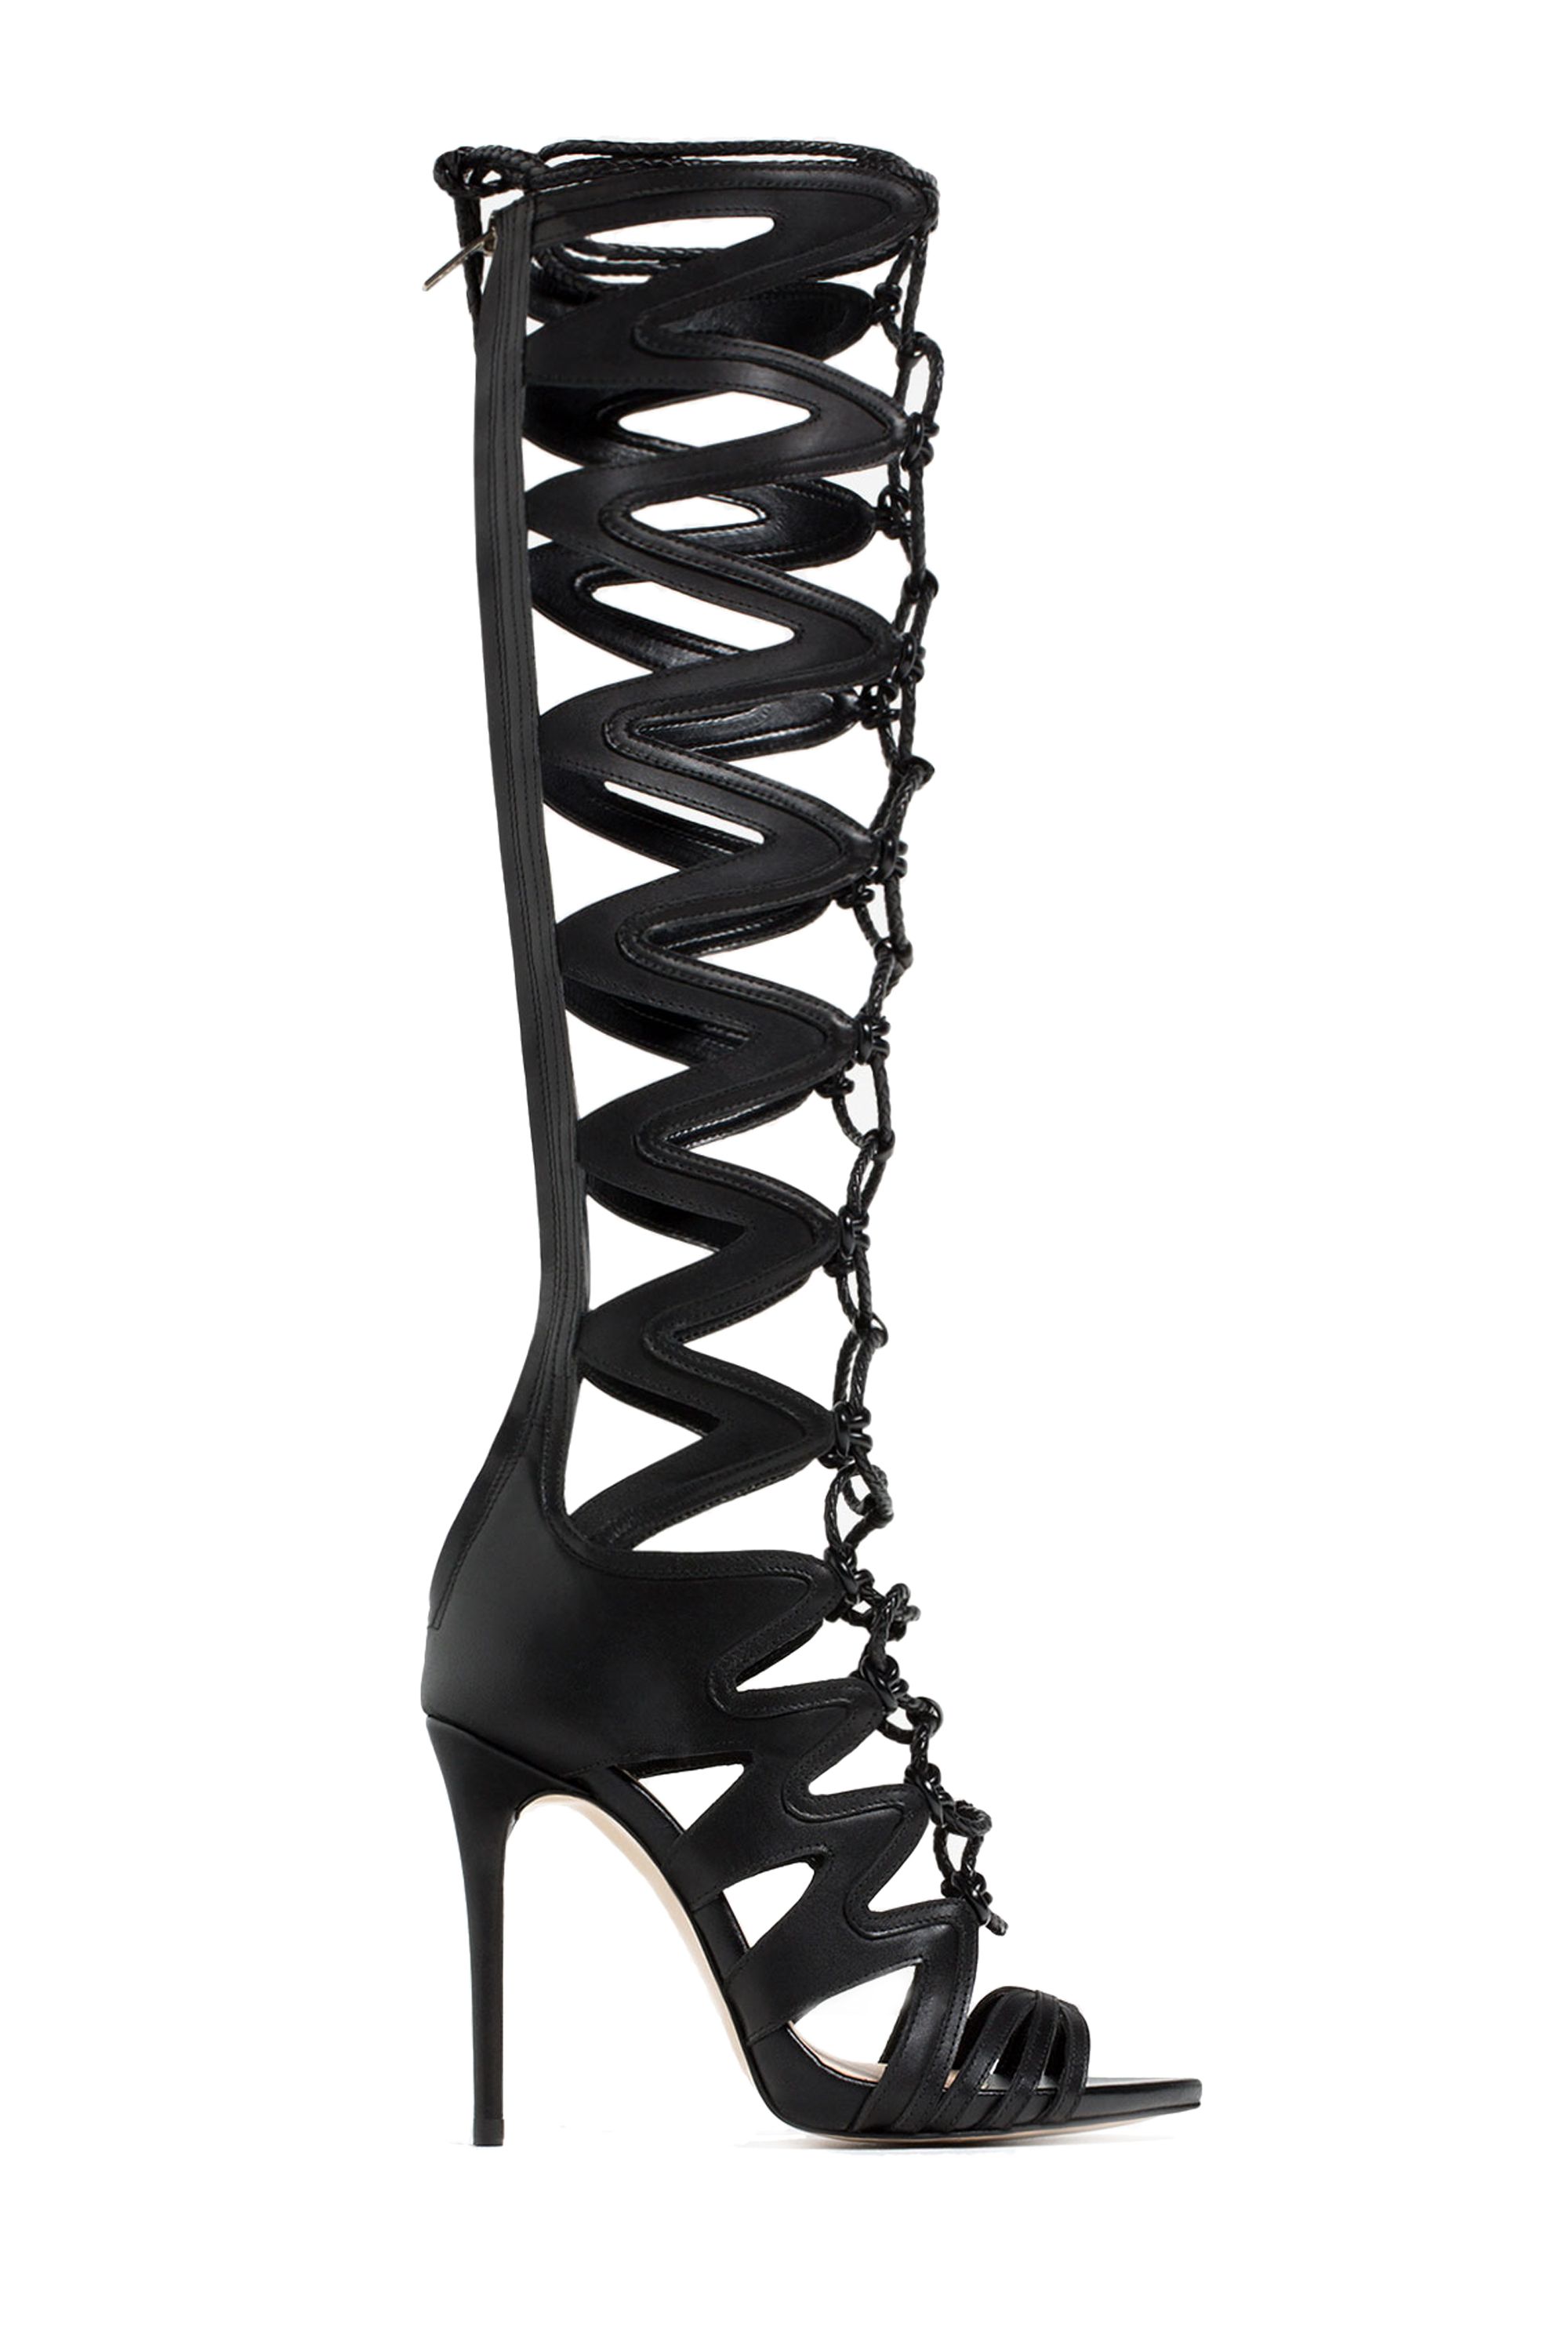 Summer Fashion Strappy Knee High Gladiator Stiletto Heel Pumps Sandals Shoes  G32 | eBay